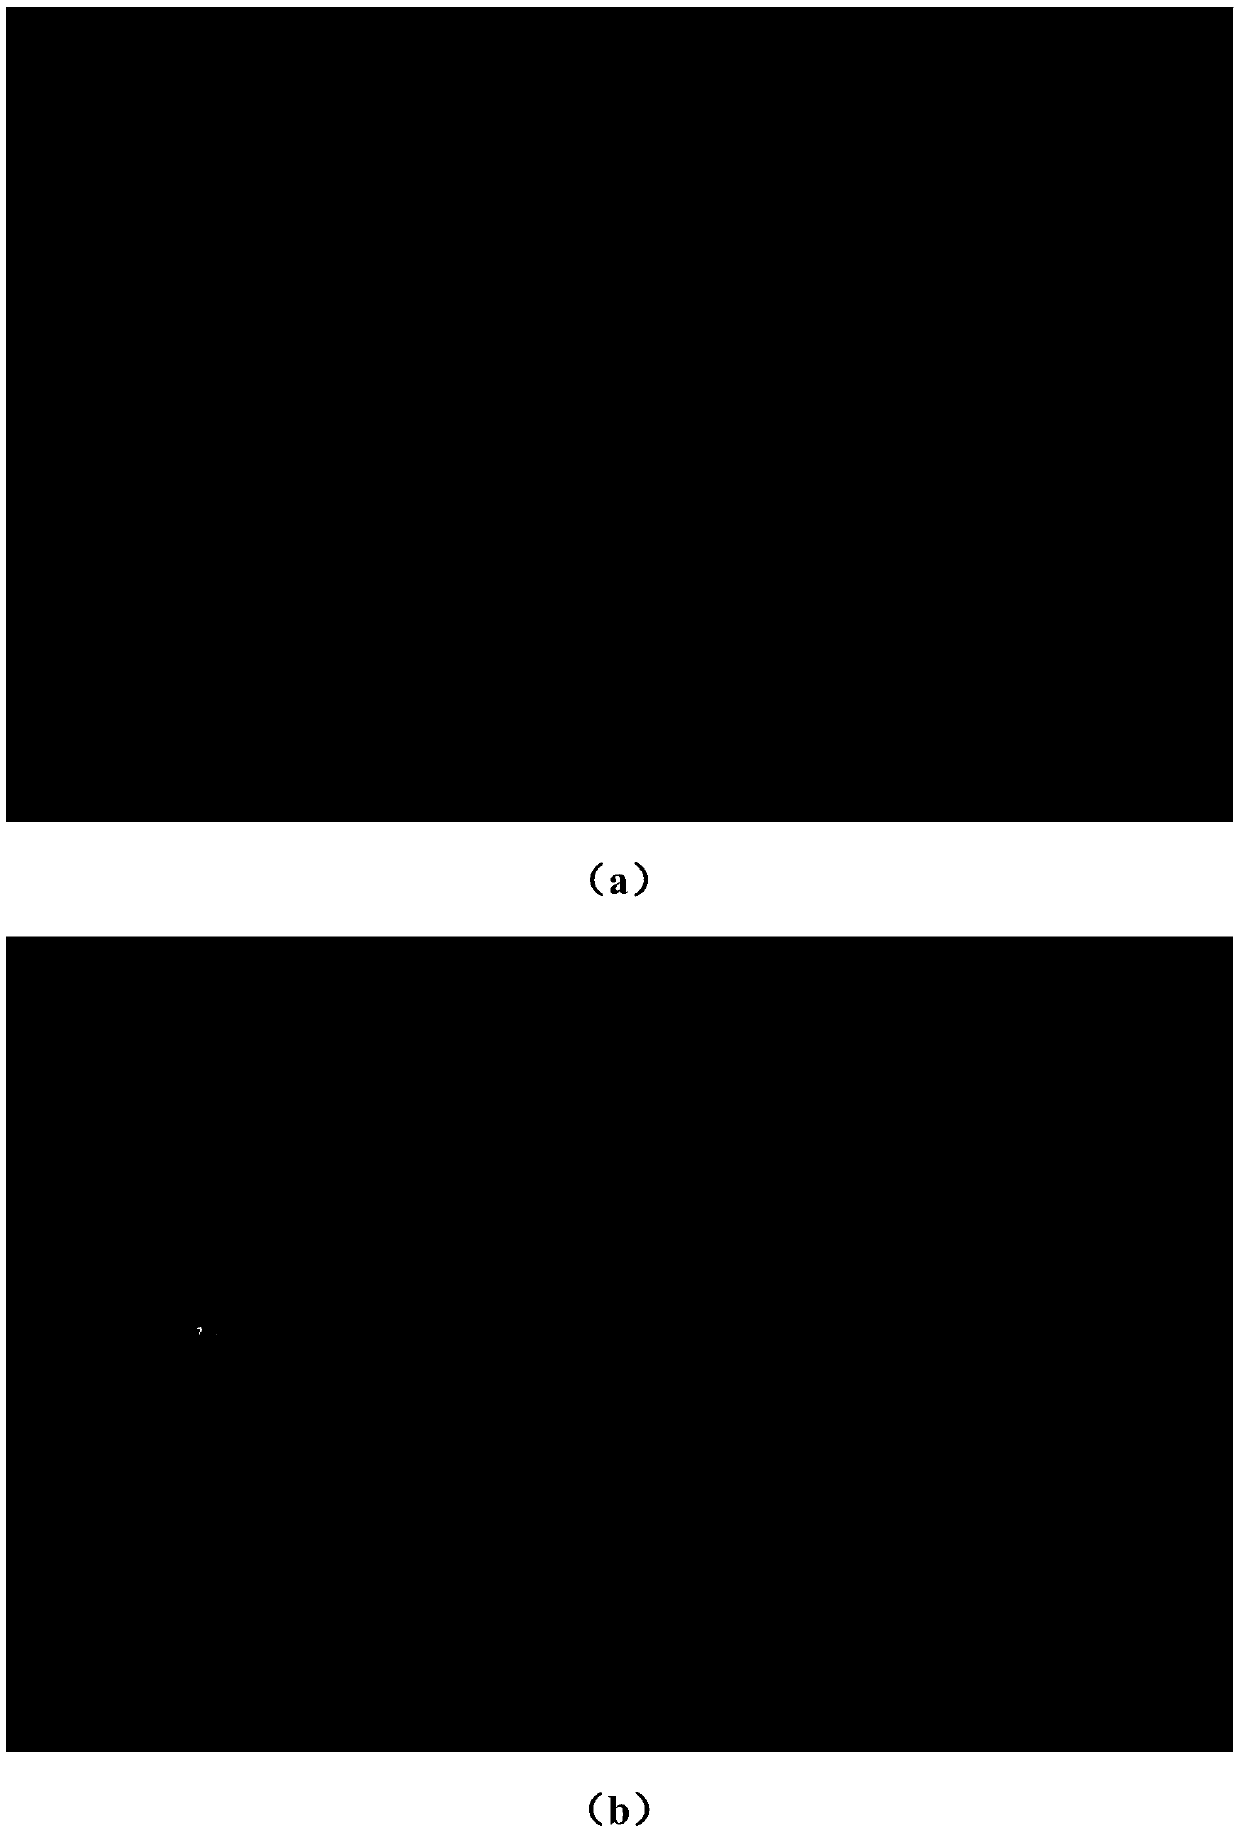 Eye fundus image optic disc and macular positioning detection algorithm based on YOLO-V3